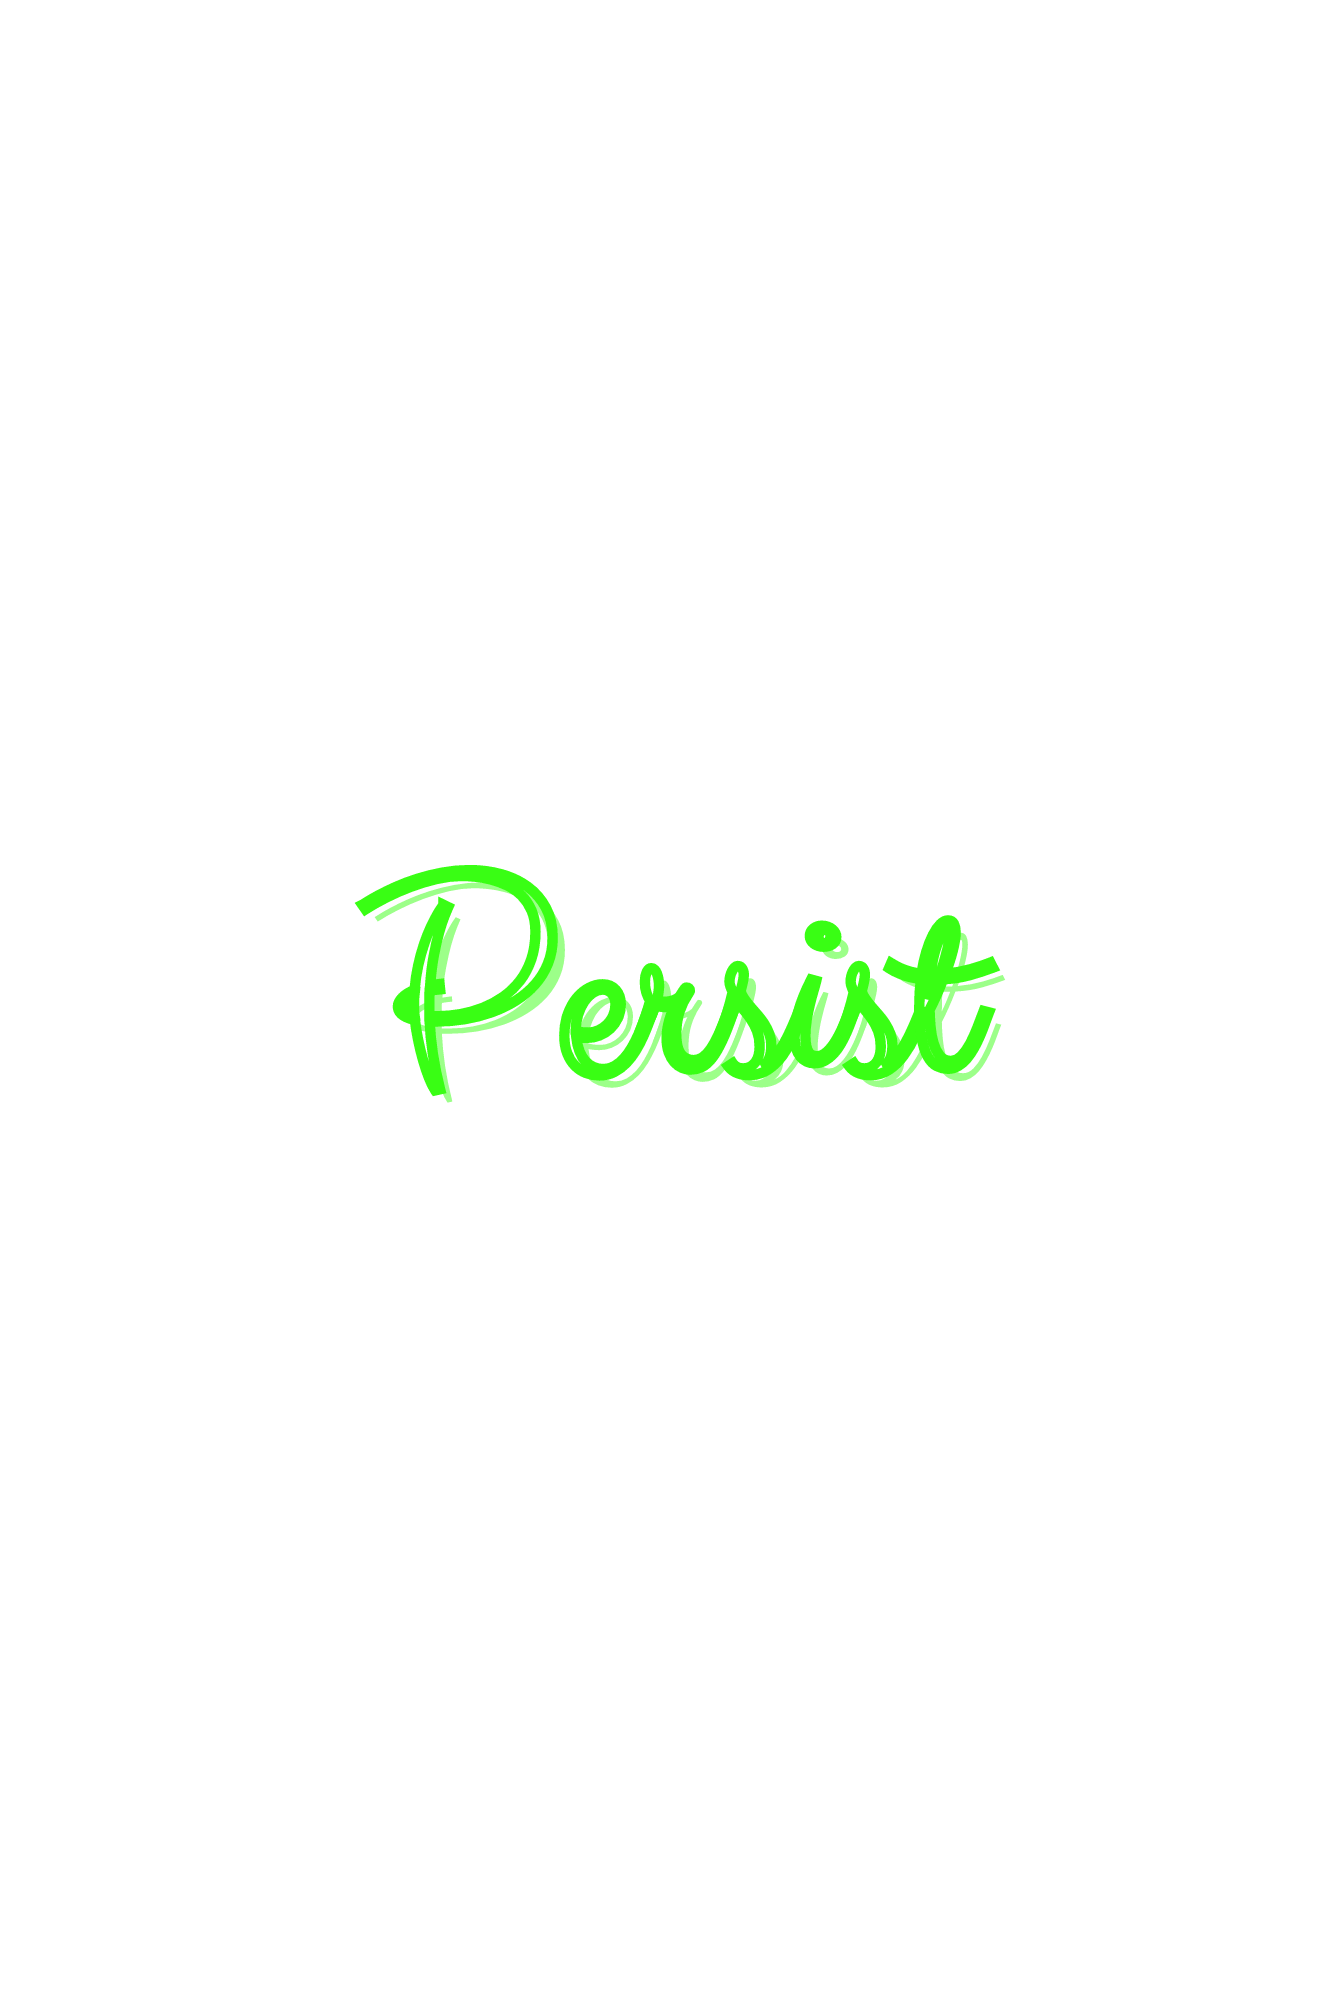 Persist (1)